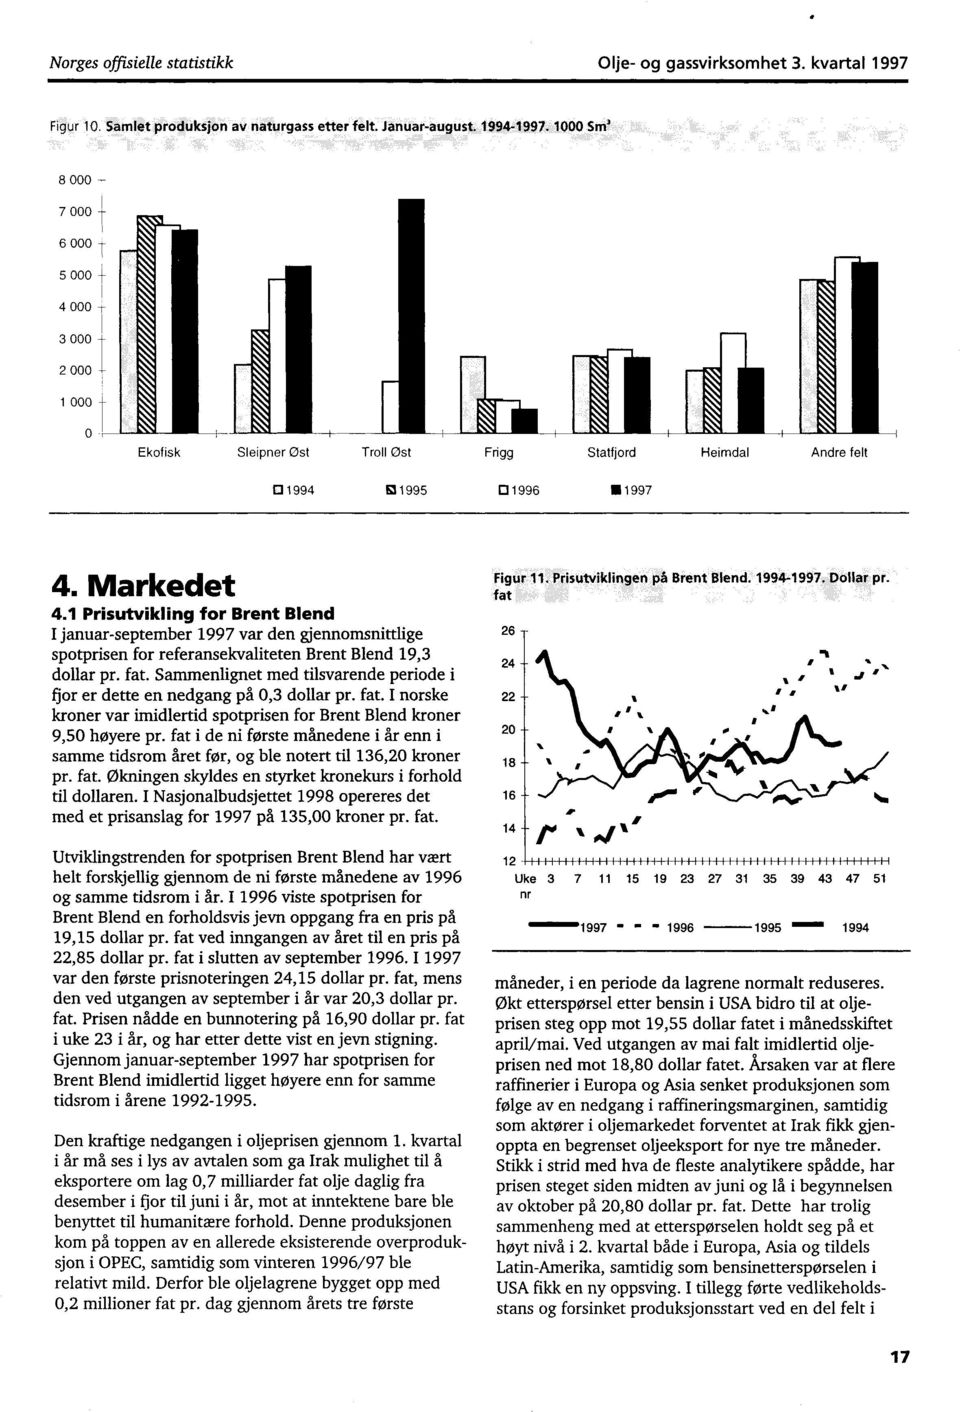 1 Prisutvikling for Brent Blend I januarseptember 1997 var den gjennomsnittlige spotprisen for referansekvaliteten Brent Blend 19,3 dollar pr. fat.